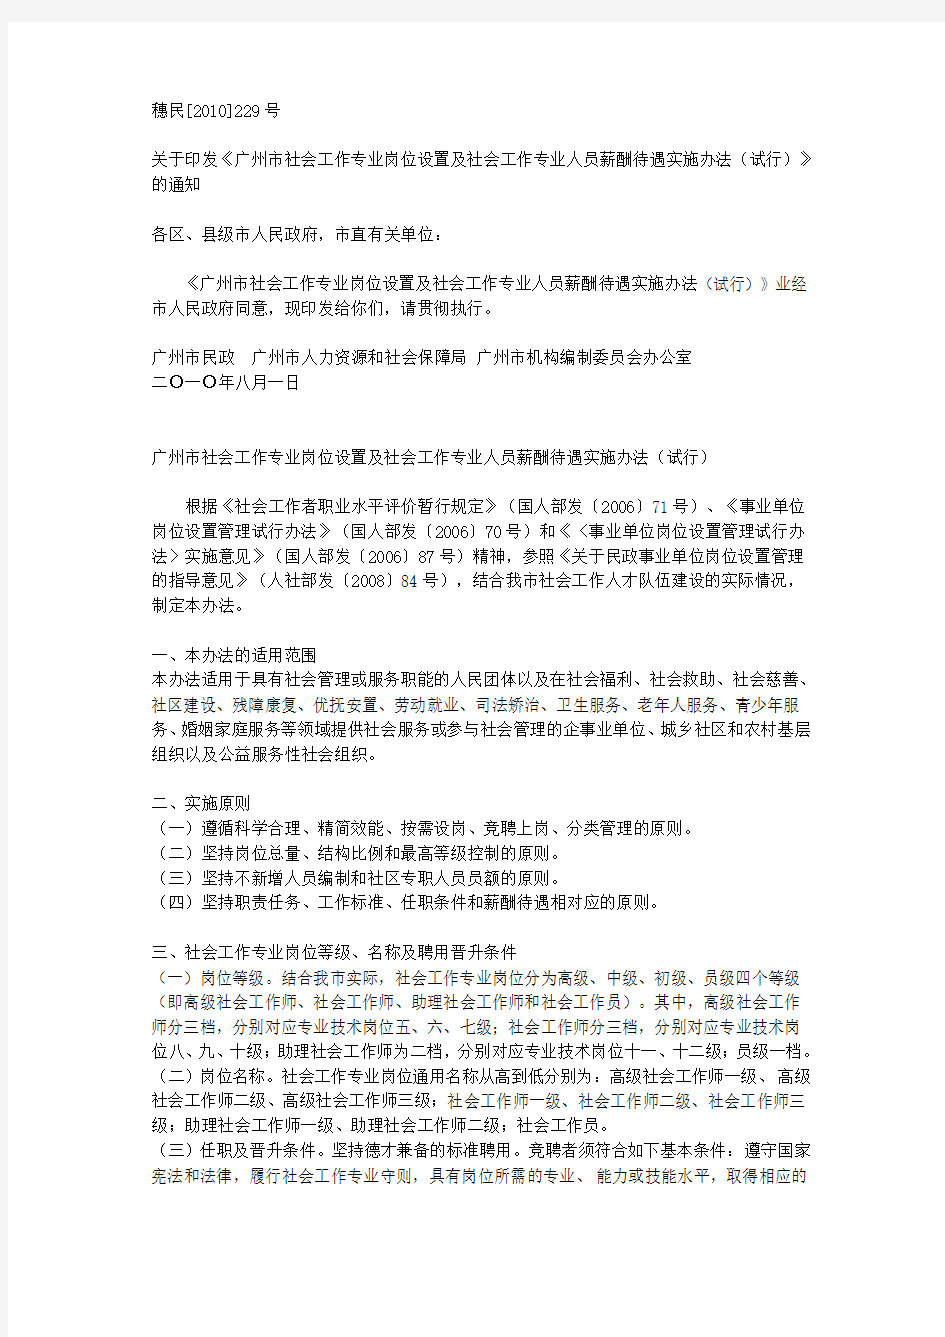 广州市社会工作专业岗位设置及社会工作专业人员薪酬待遇实施办法(试行)